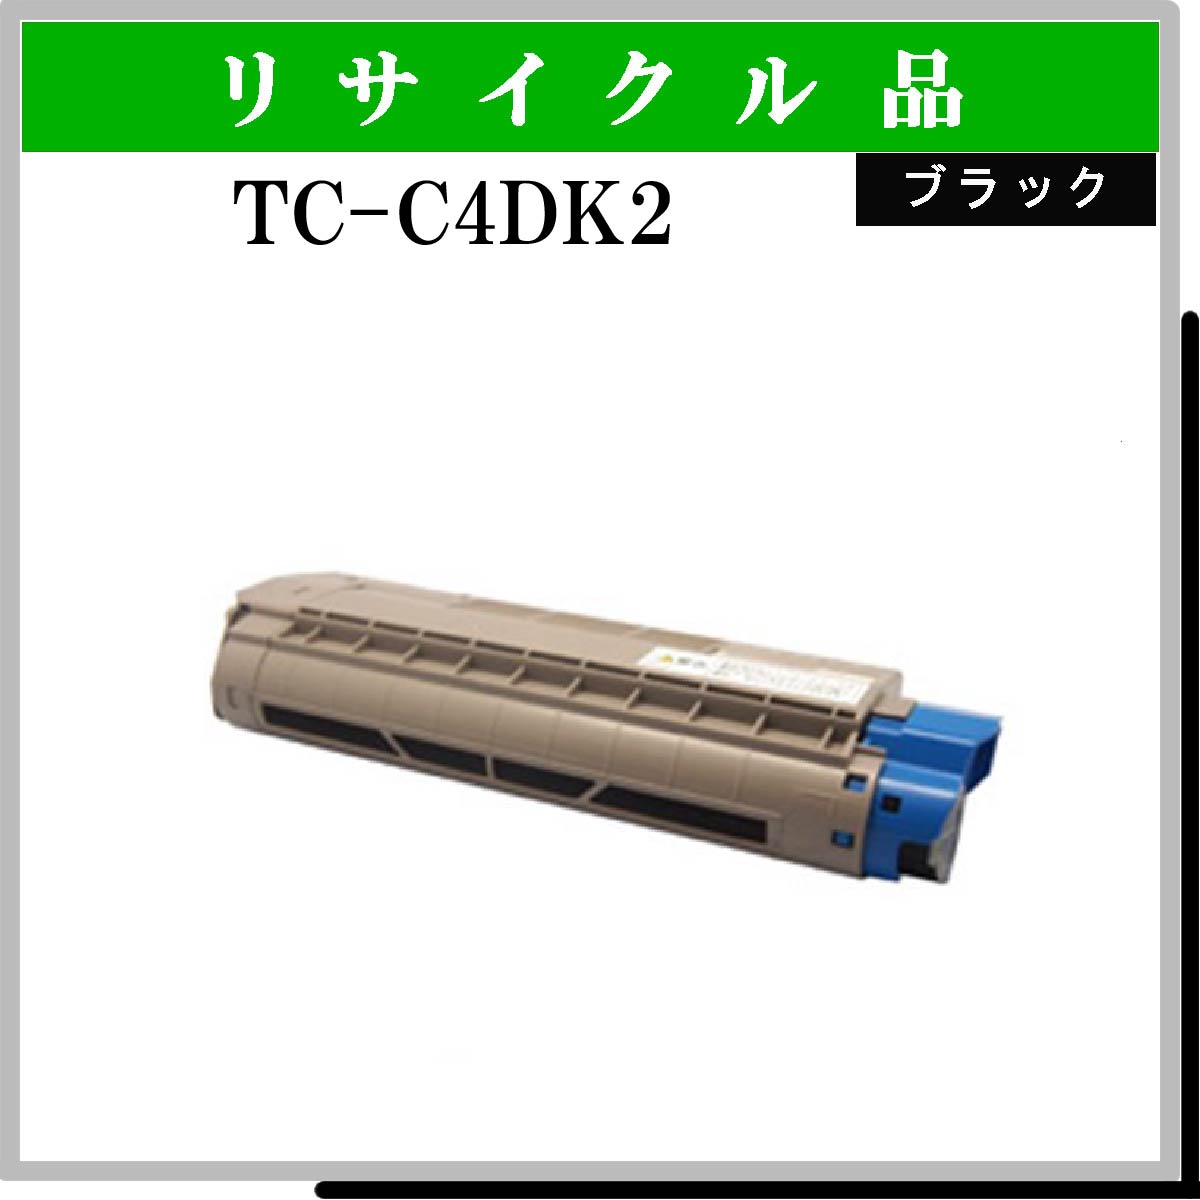 TC-C4DK2